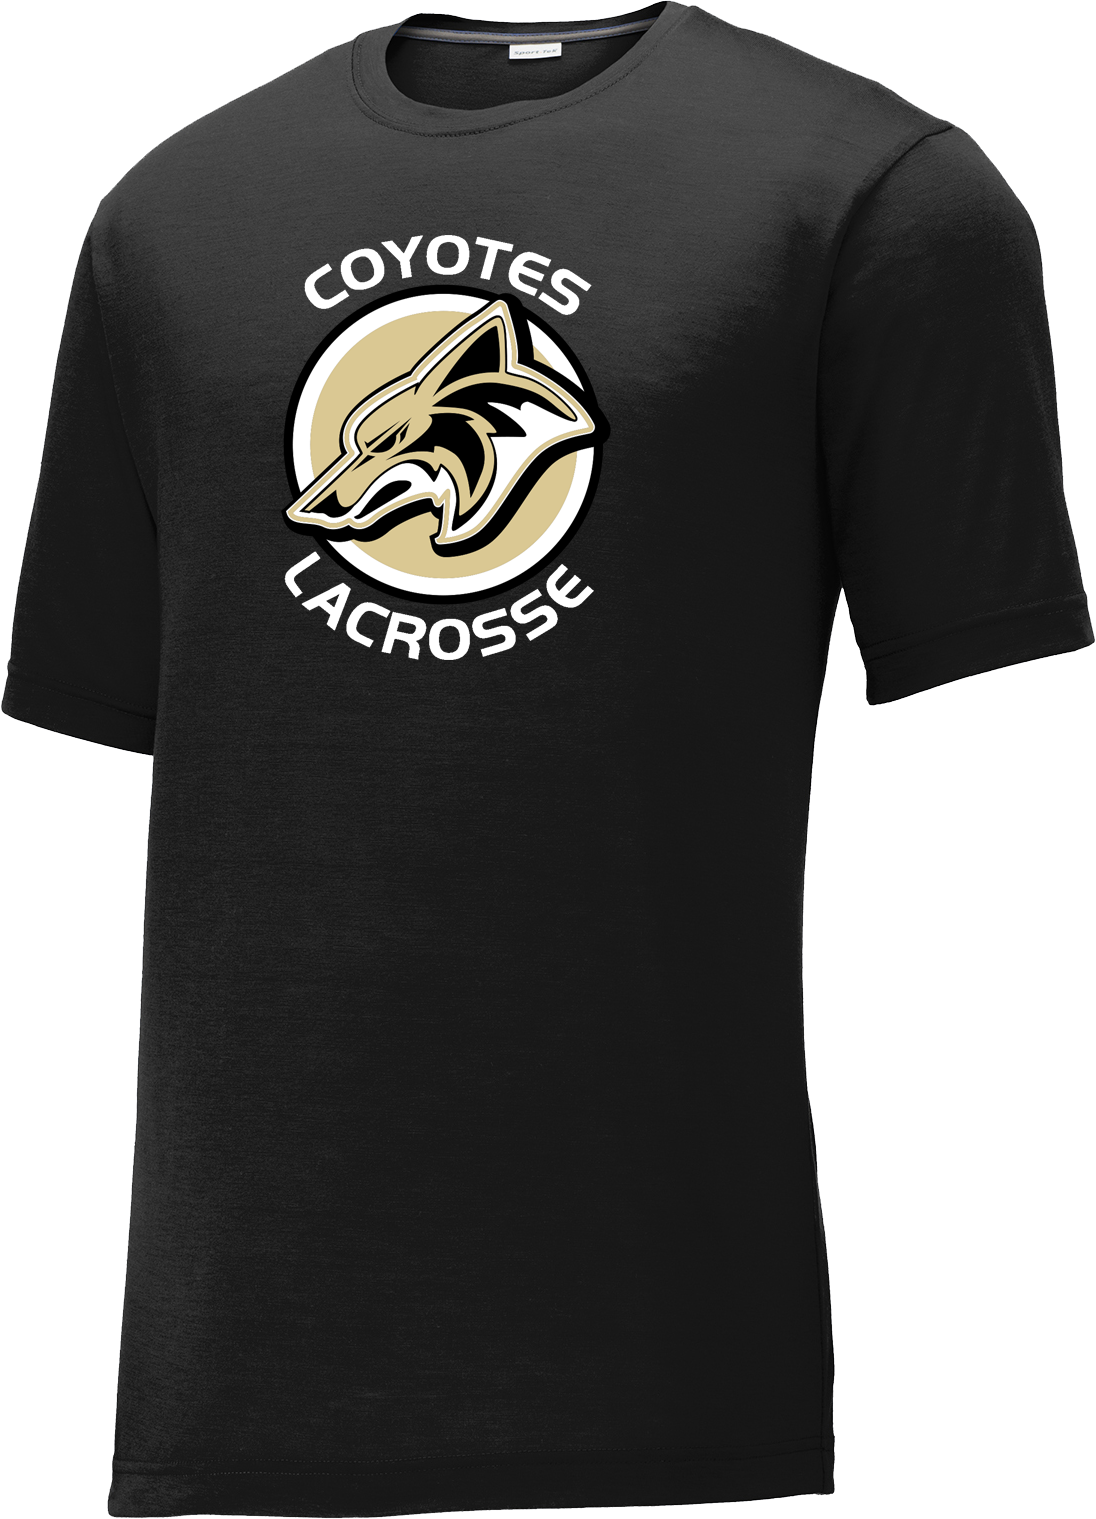 Dane County Lacrosse Black CottonTouch Performance T-Shirt